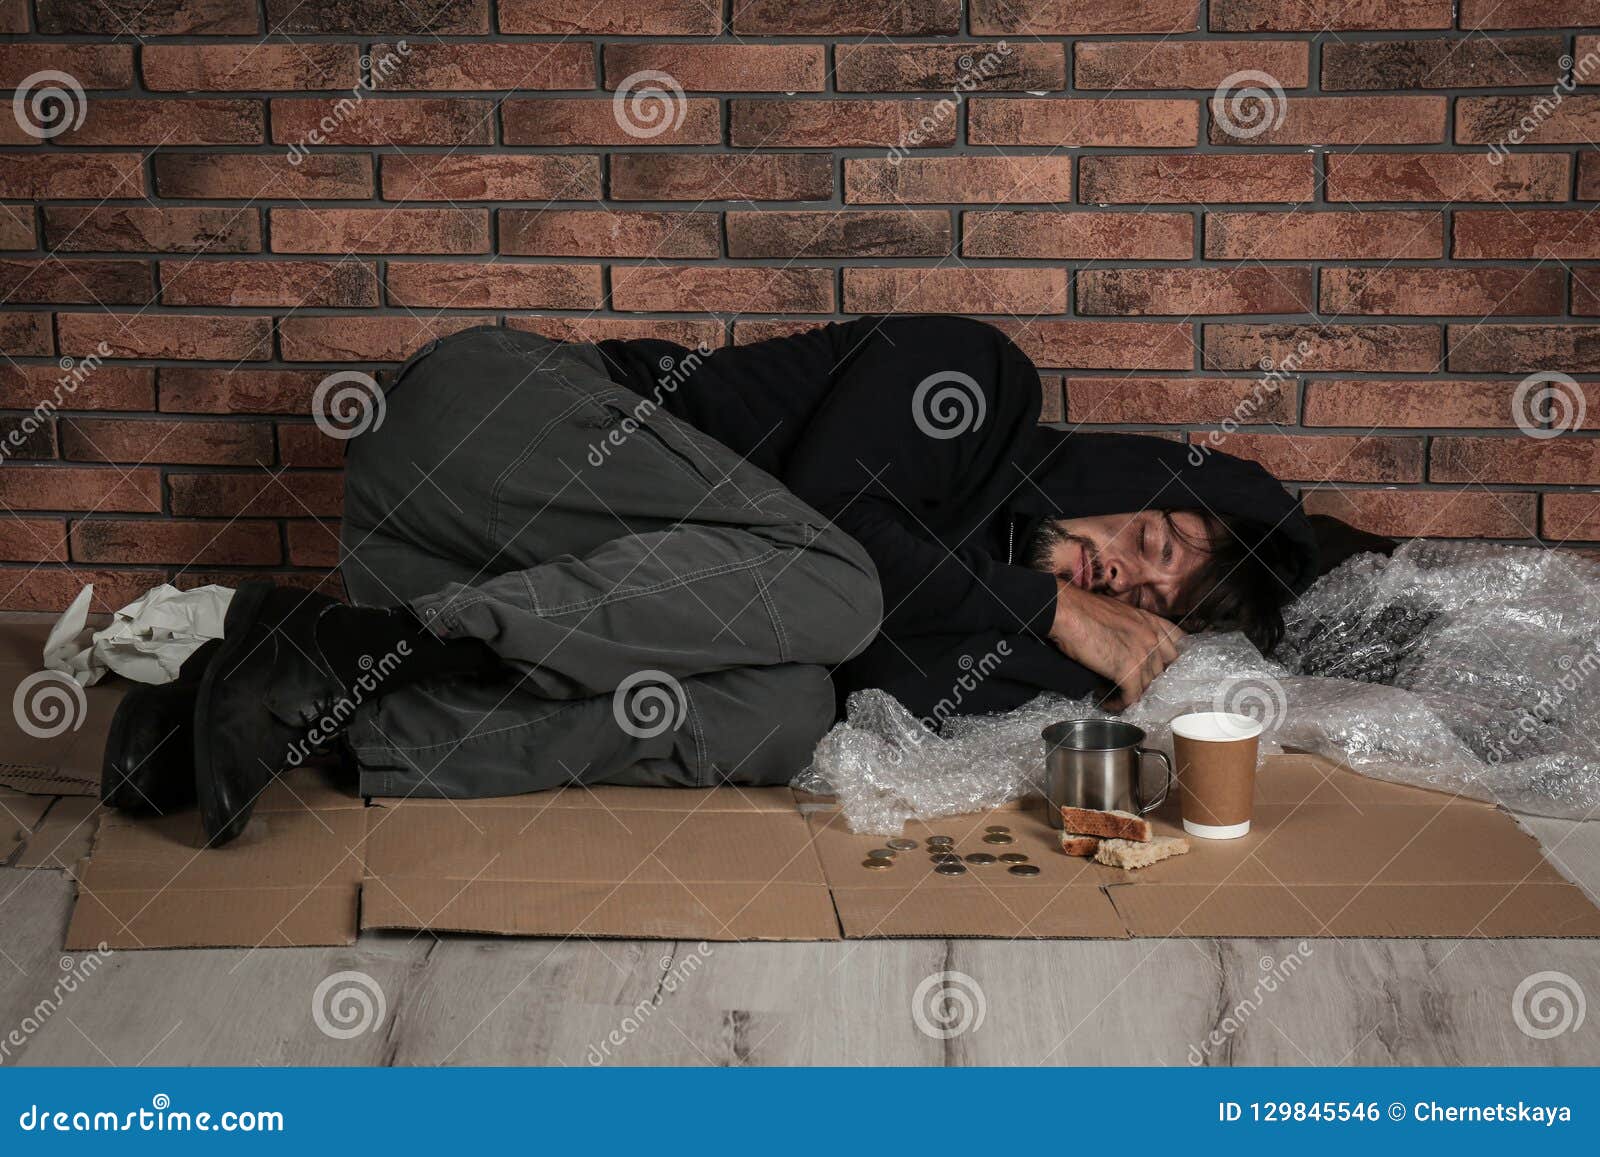 Man sleeping on floor